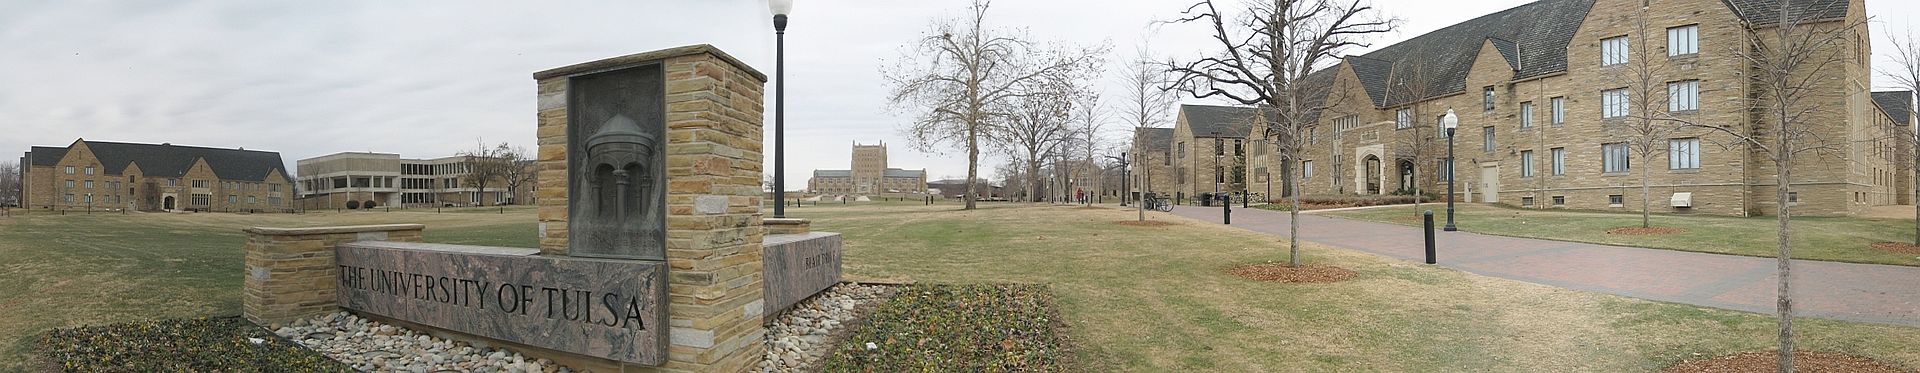 塔尔萨大学 - The University of Tulsa, viewed from South Delaware Avenue - University of Tulsa